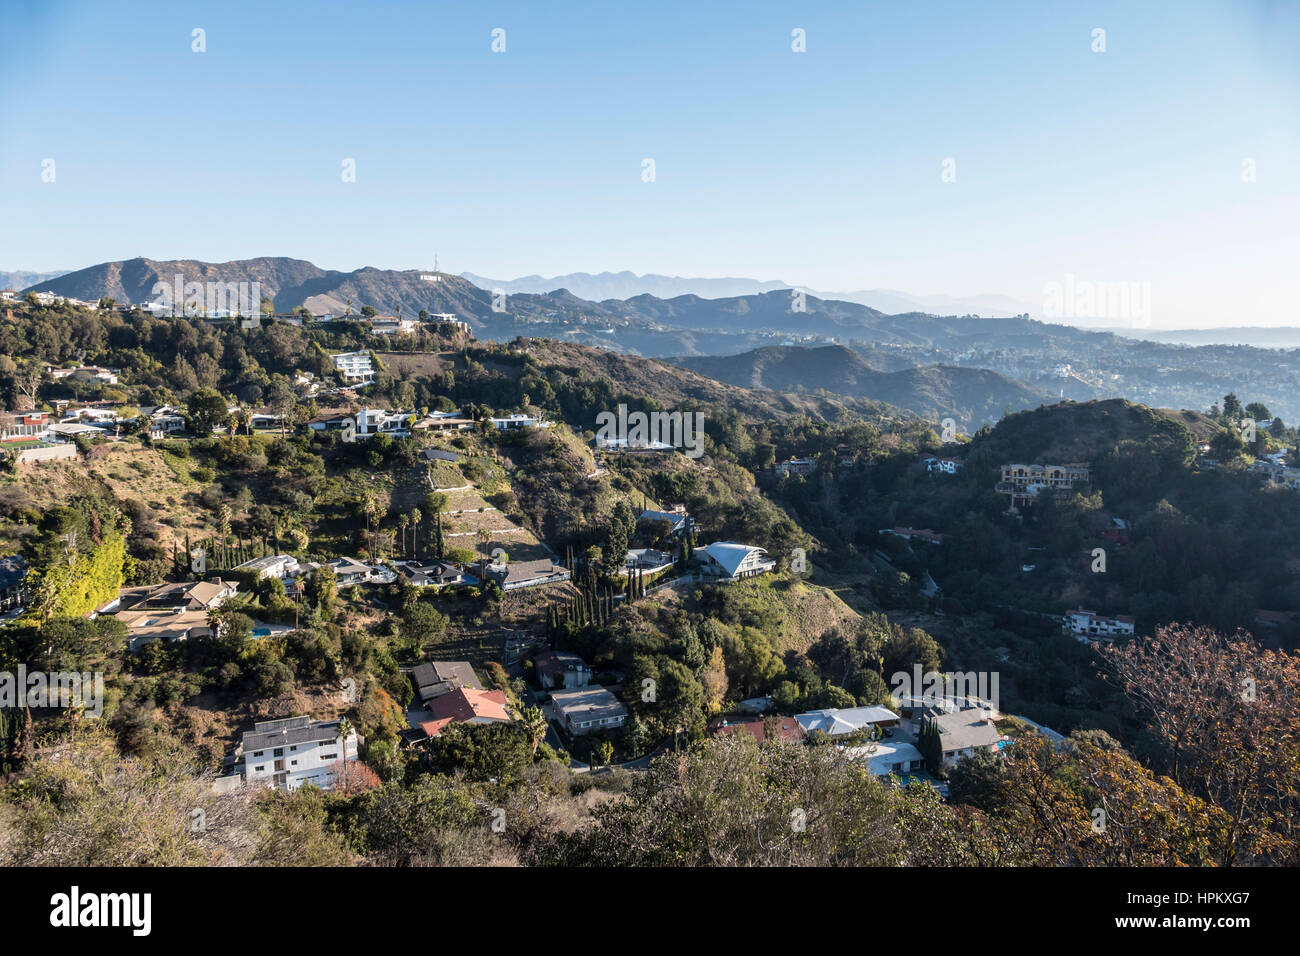 Los Angeles, California, Stati Uniti d'America - Gennaio 1, 2015: Nuovi anni mattina sotto il segno di Hollywood in colline di Hollywood zona di Los Angeles. Foto Stock